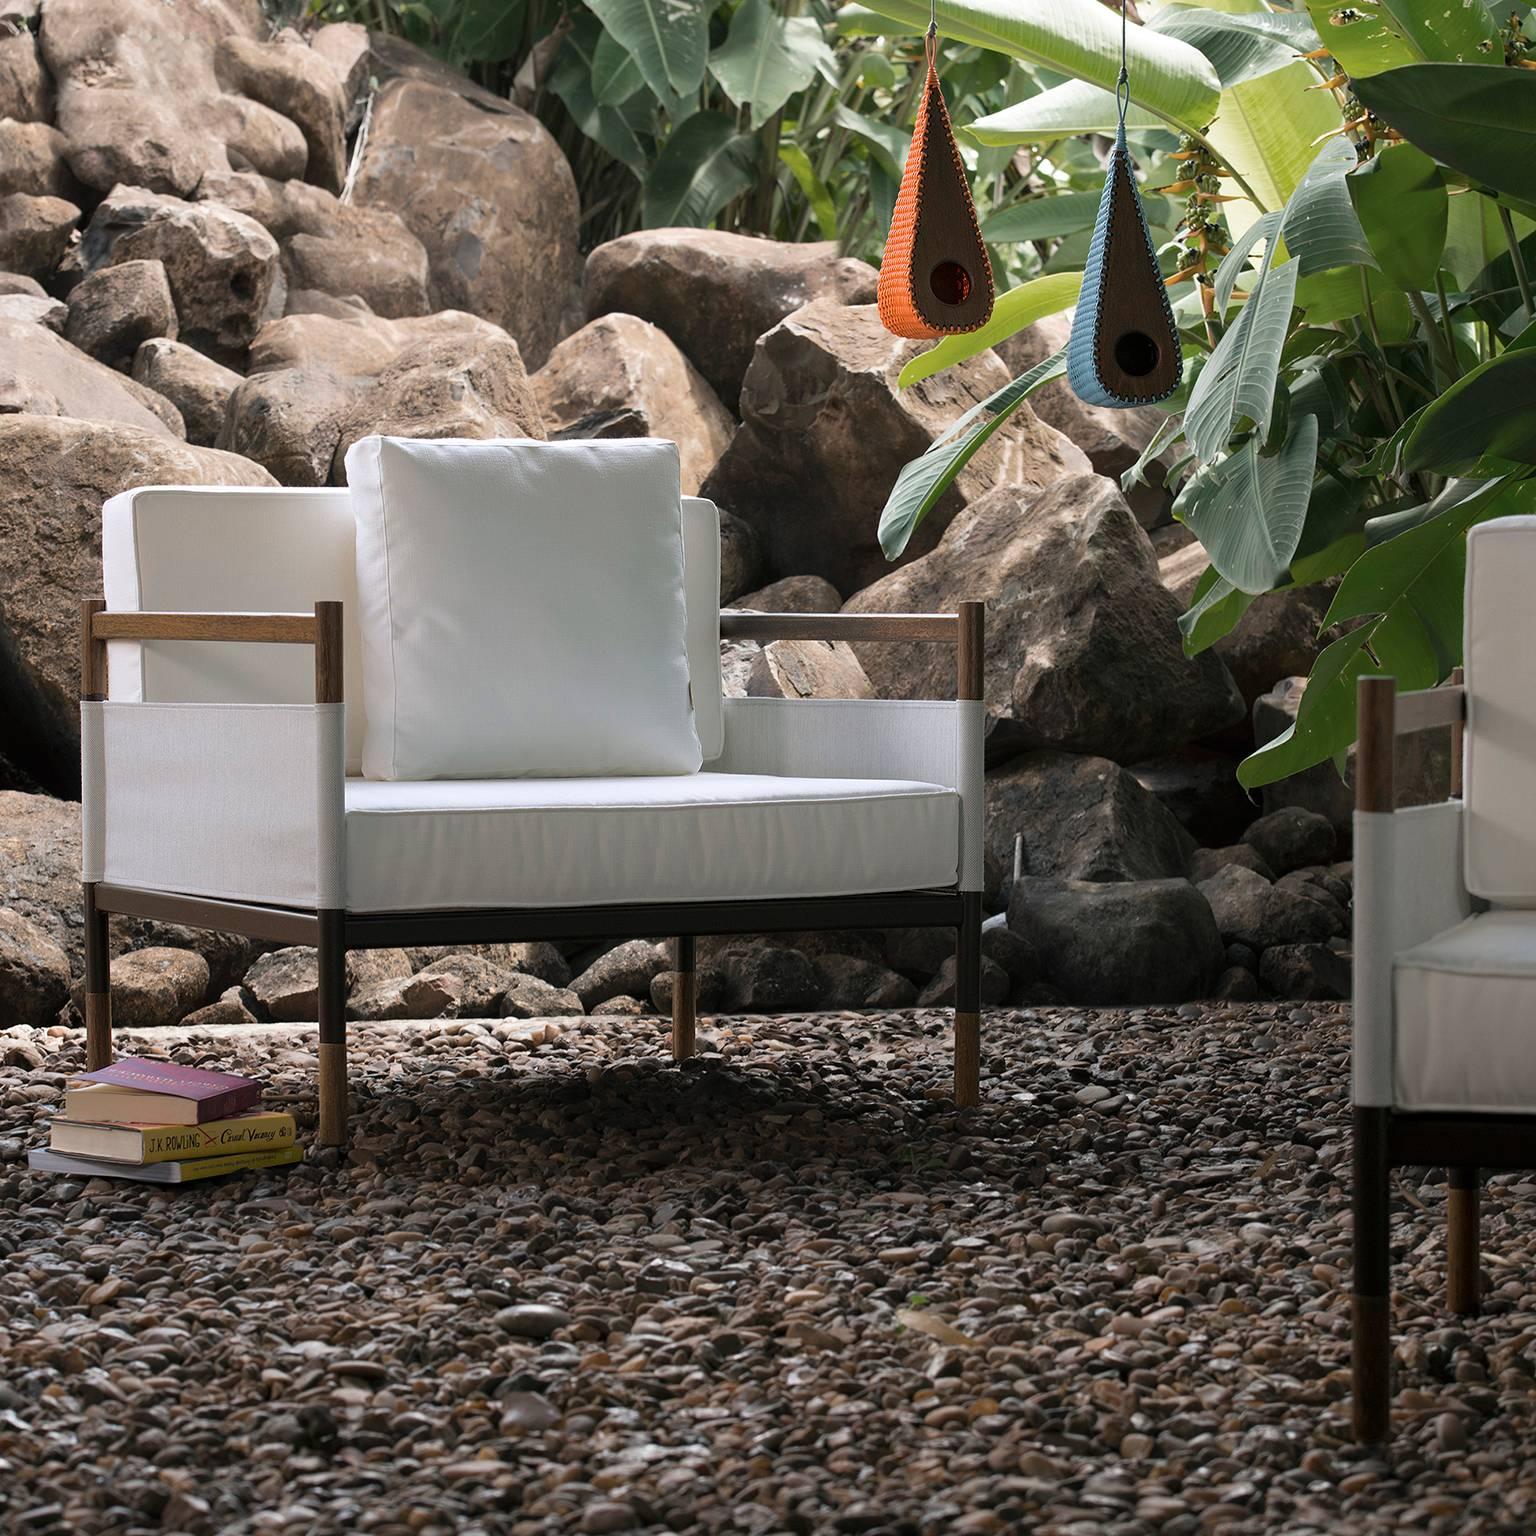 Dieser Lounge-Sessel für den Außenbereich wird auf Bestellung aus Hartholz, Metall und Stoffen hergestellt. Die auch als Sessel klassifizierte Struktur mit mehreren Oberflächen wird mit Outdoor-Stoffen wie Batyline kombiniert, um eine interessante